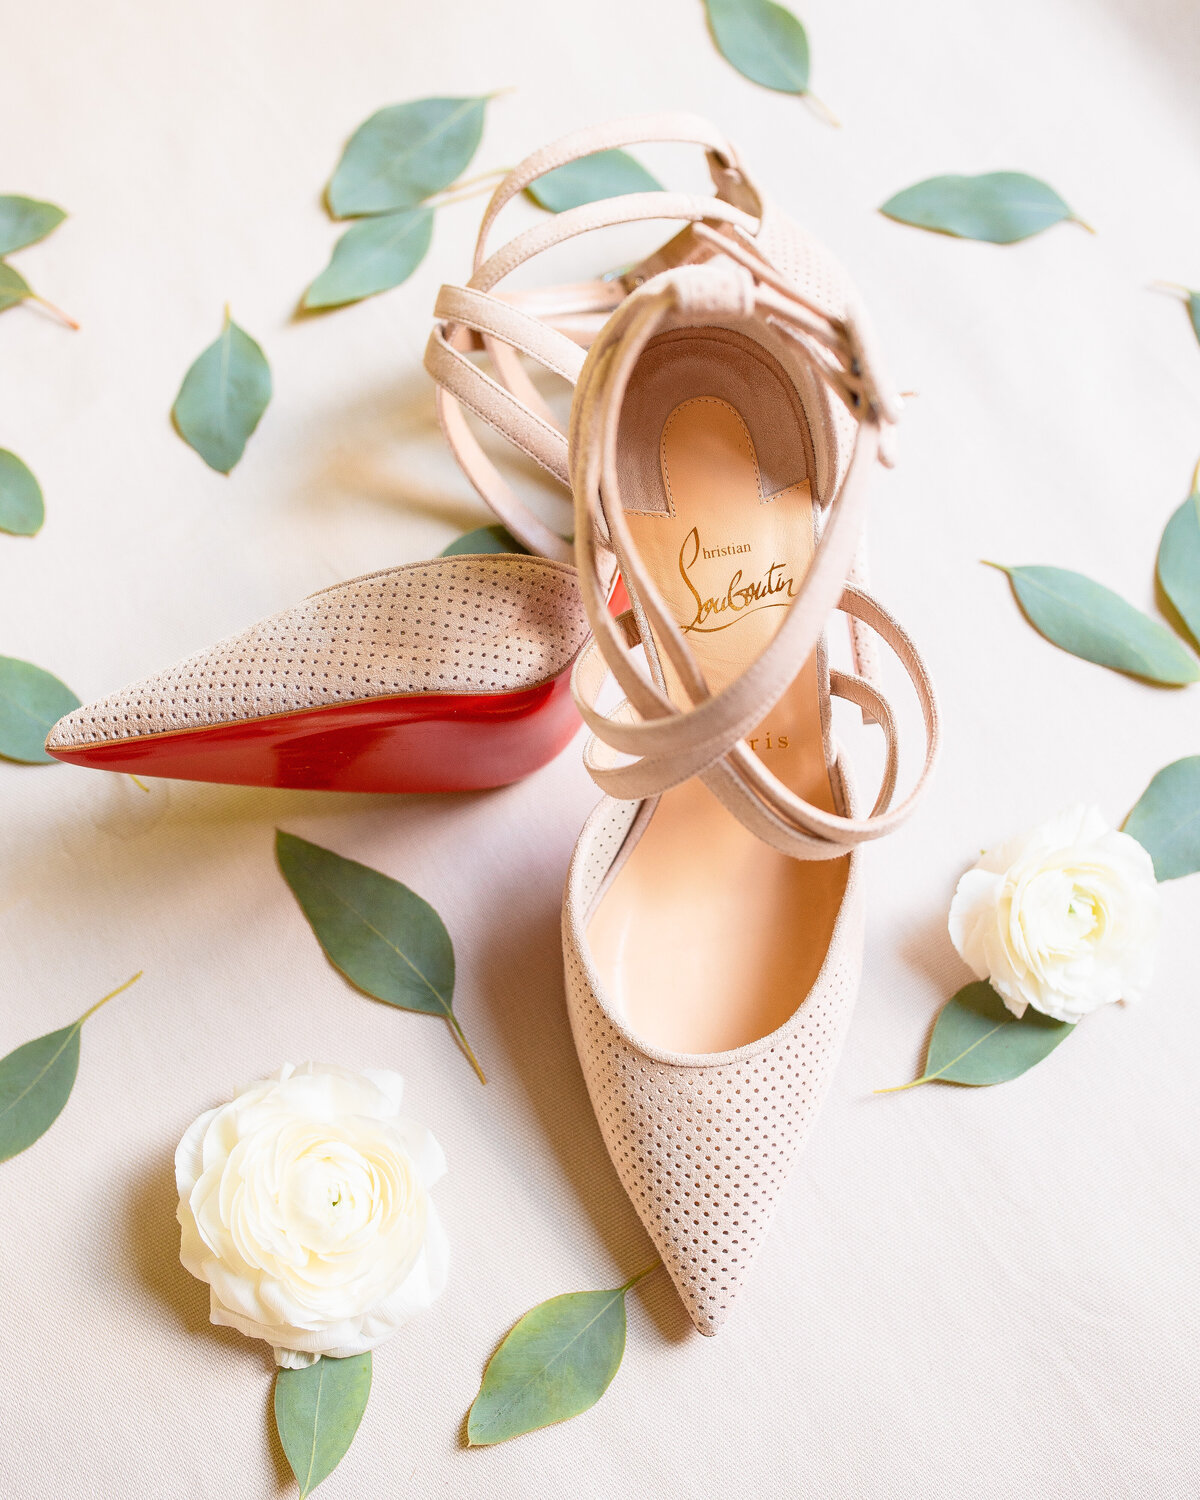 Louboutin bridal shoes.